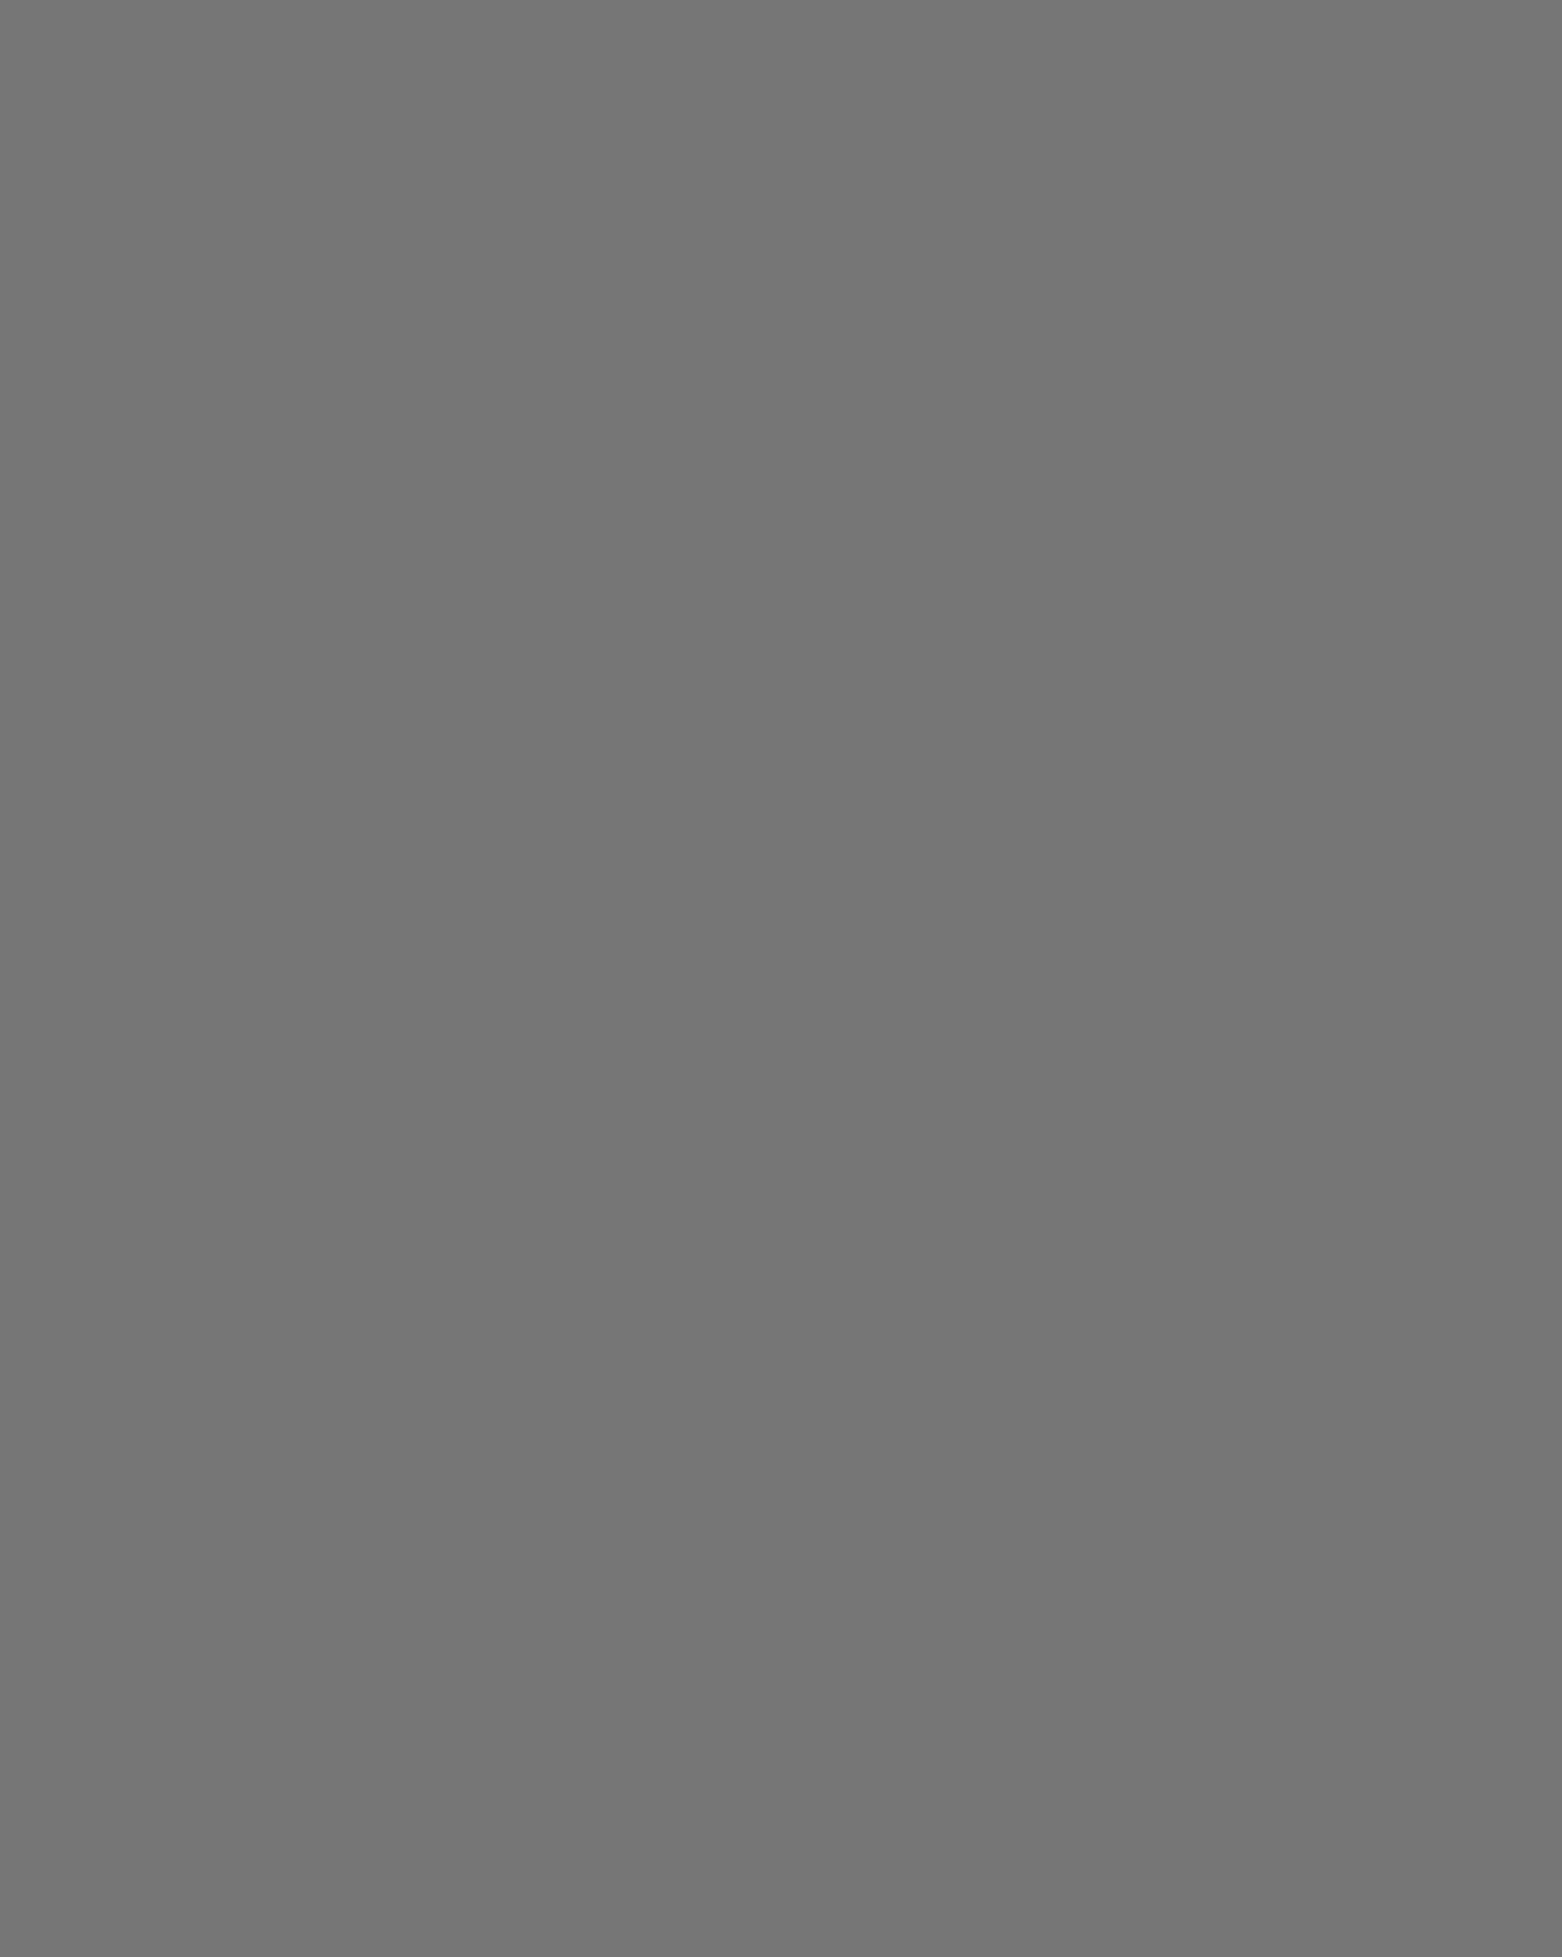 Виталий Окунь. Генерал с женой. Иллюстрация к книге Михаила Салтыкова-Щедрина «Губернские очерки». 1983. Башкирский государственный художественный музей имени М.В. Нестерова, Уфа